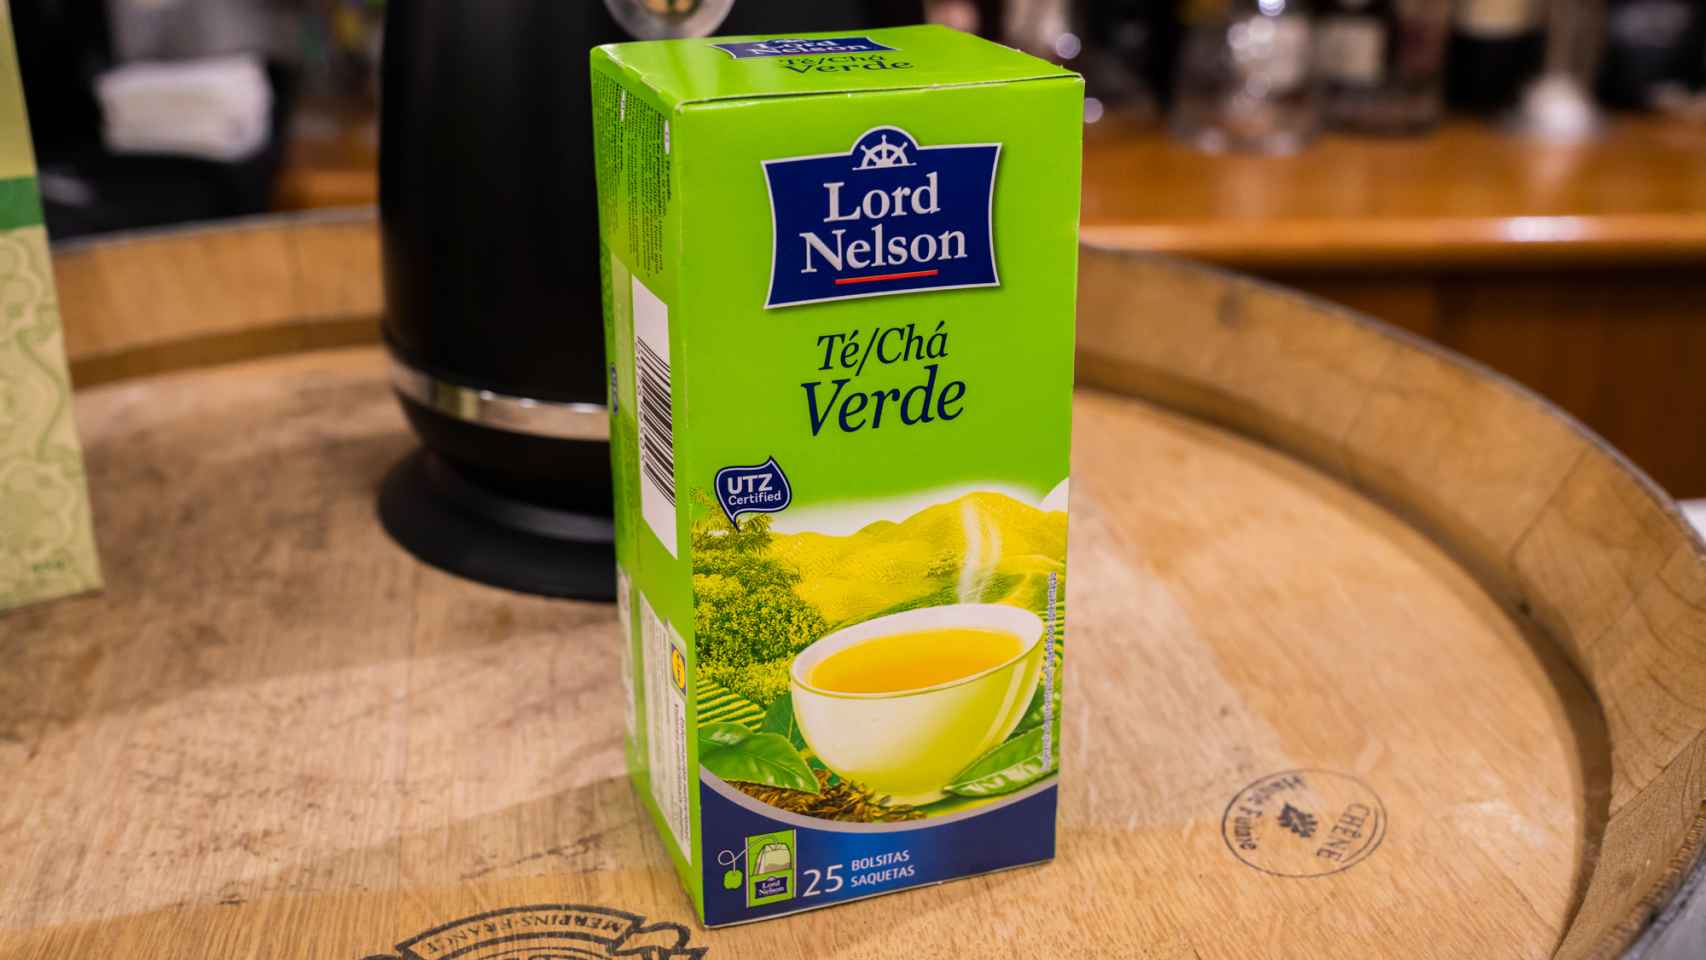 La caja de té verde de Lord Nelson, la marca blanca de Lidl.